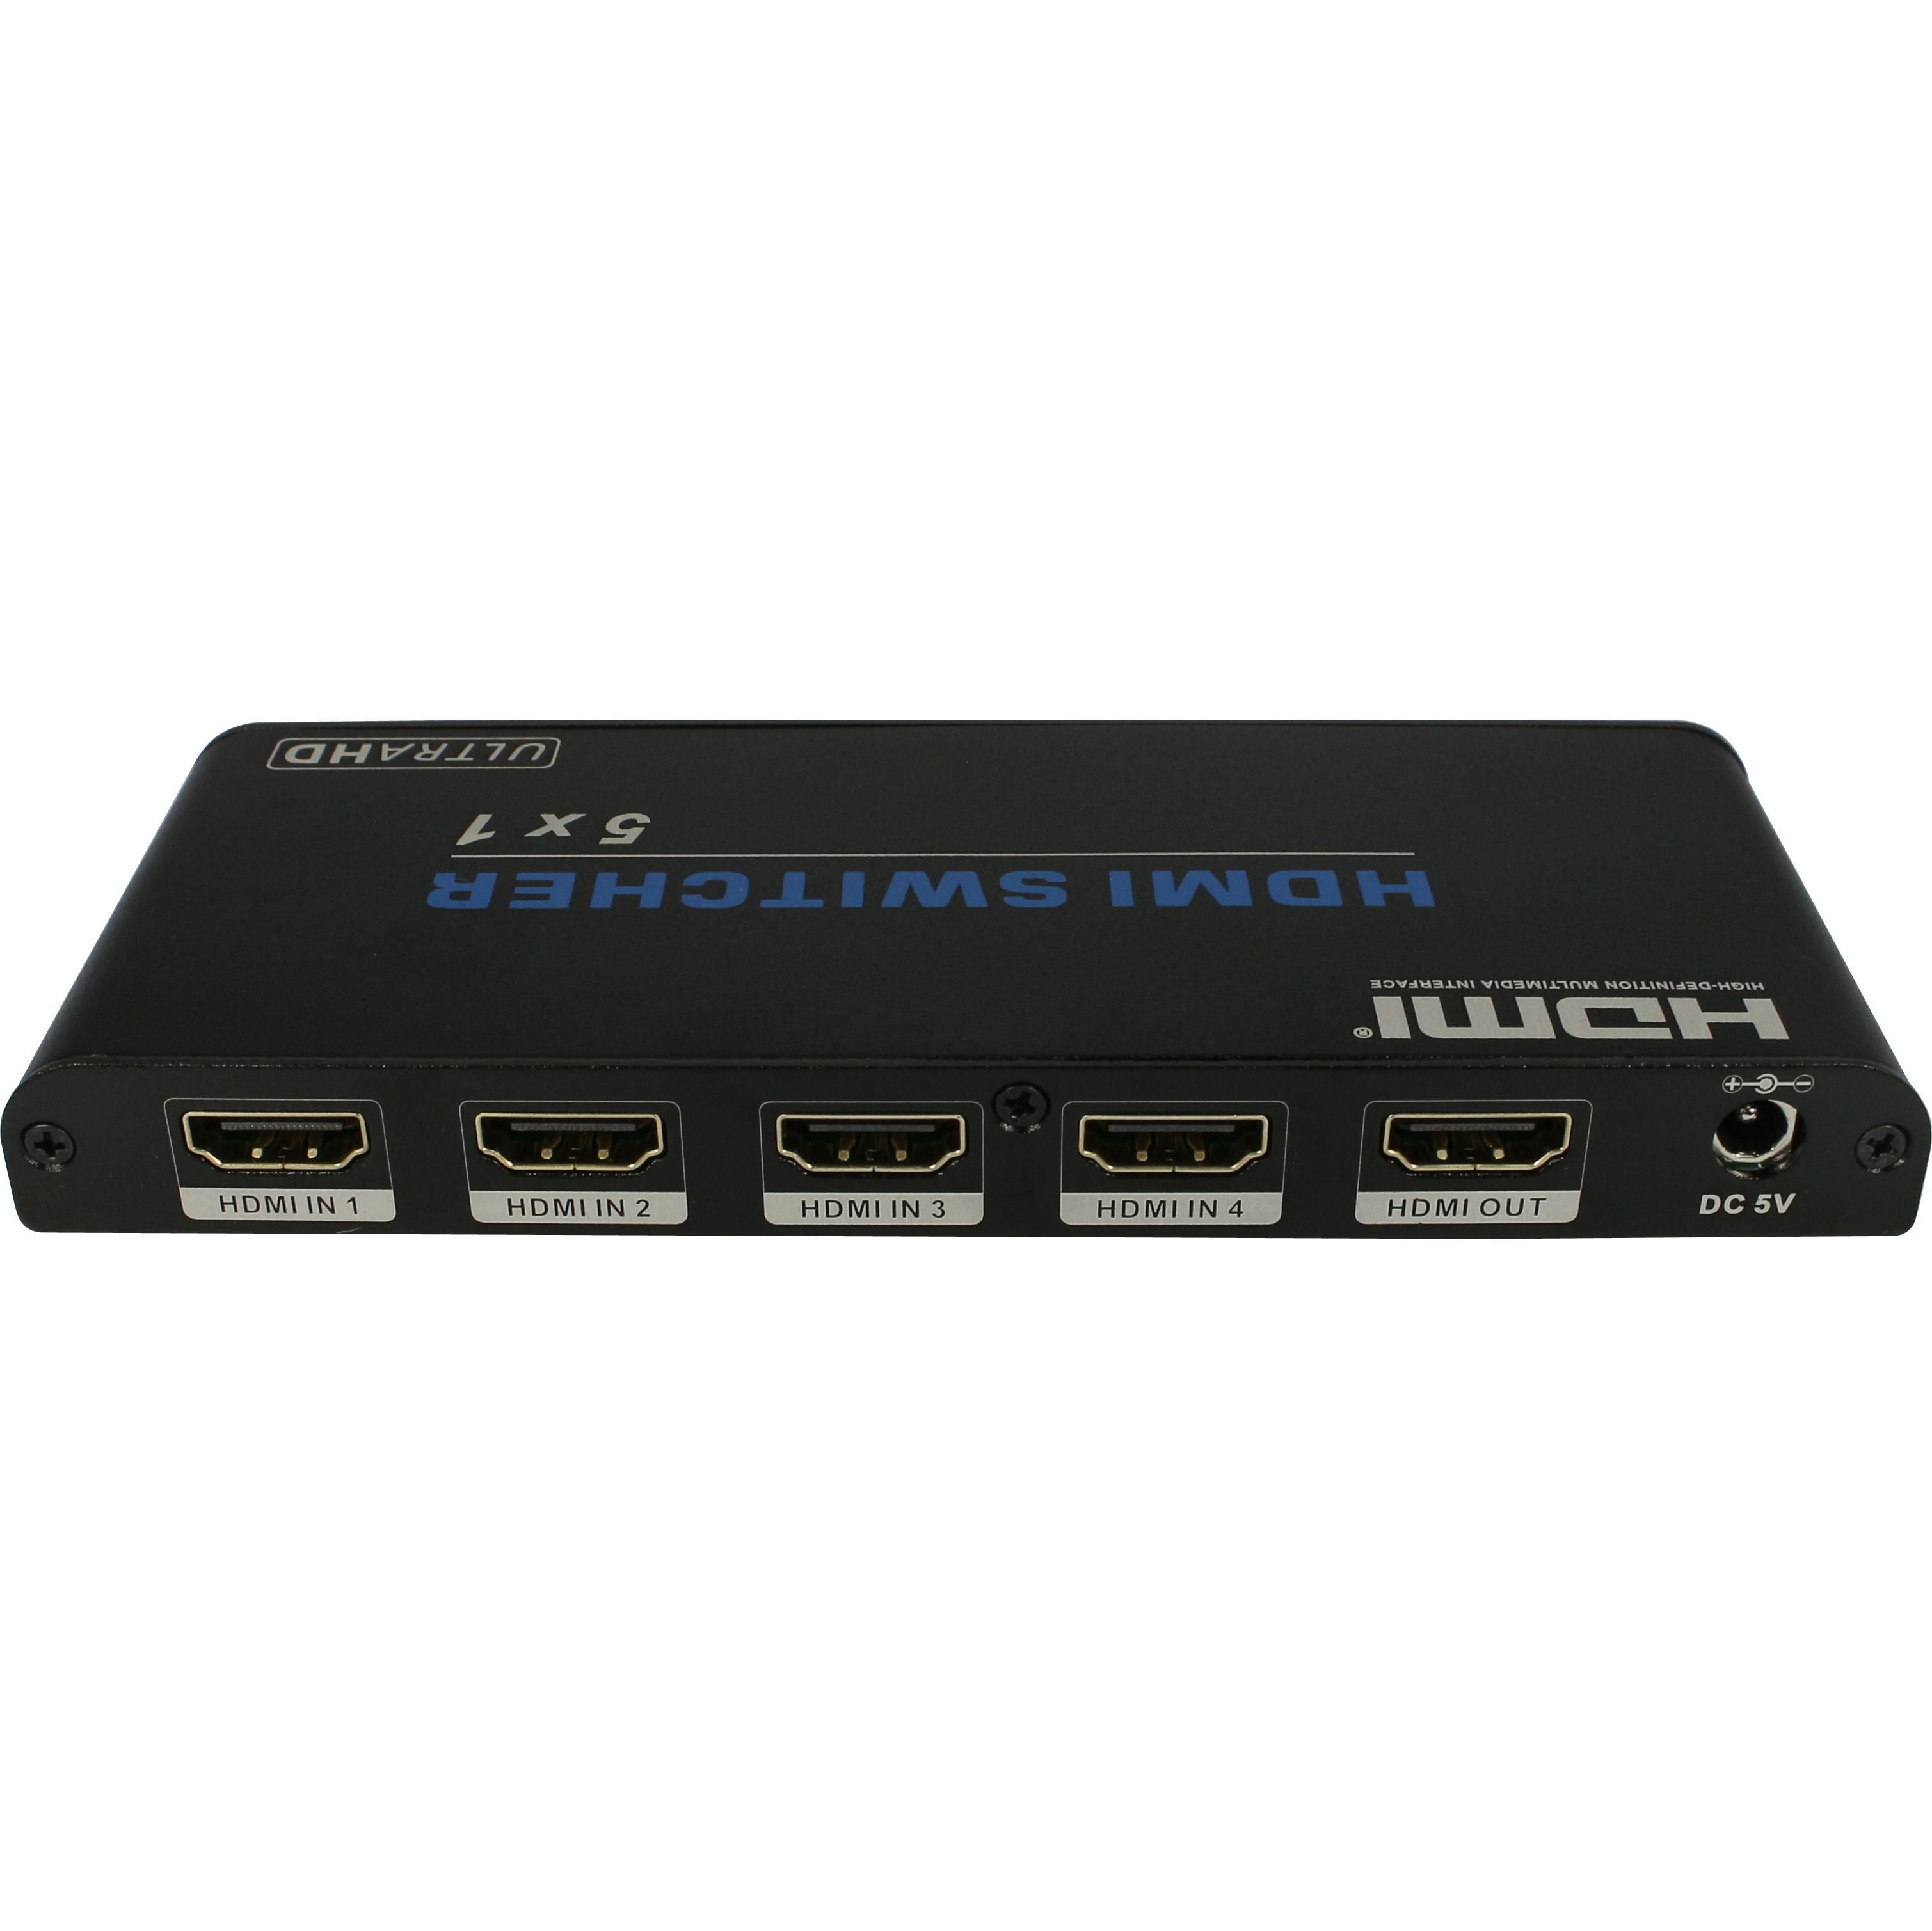  5x1 HDMI Switcher  HDV-0501A Series